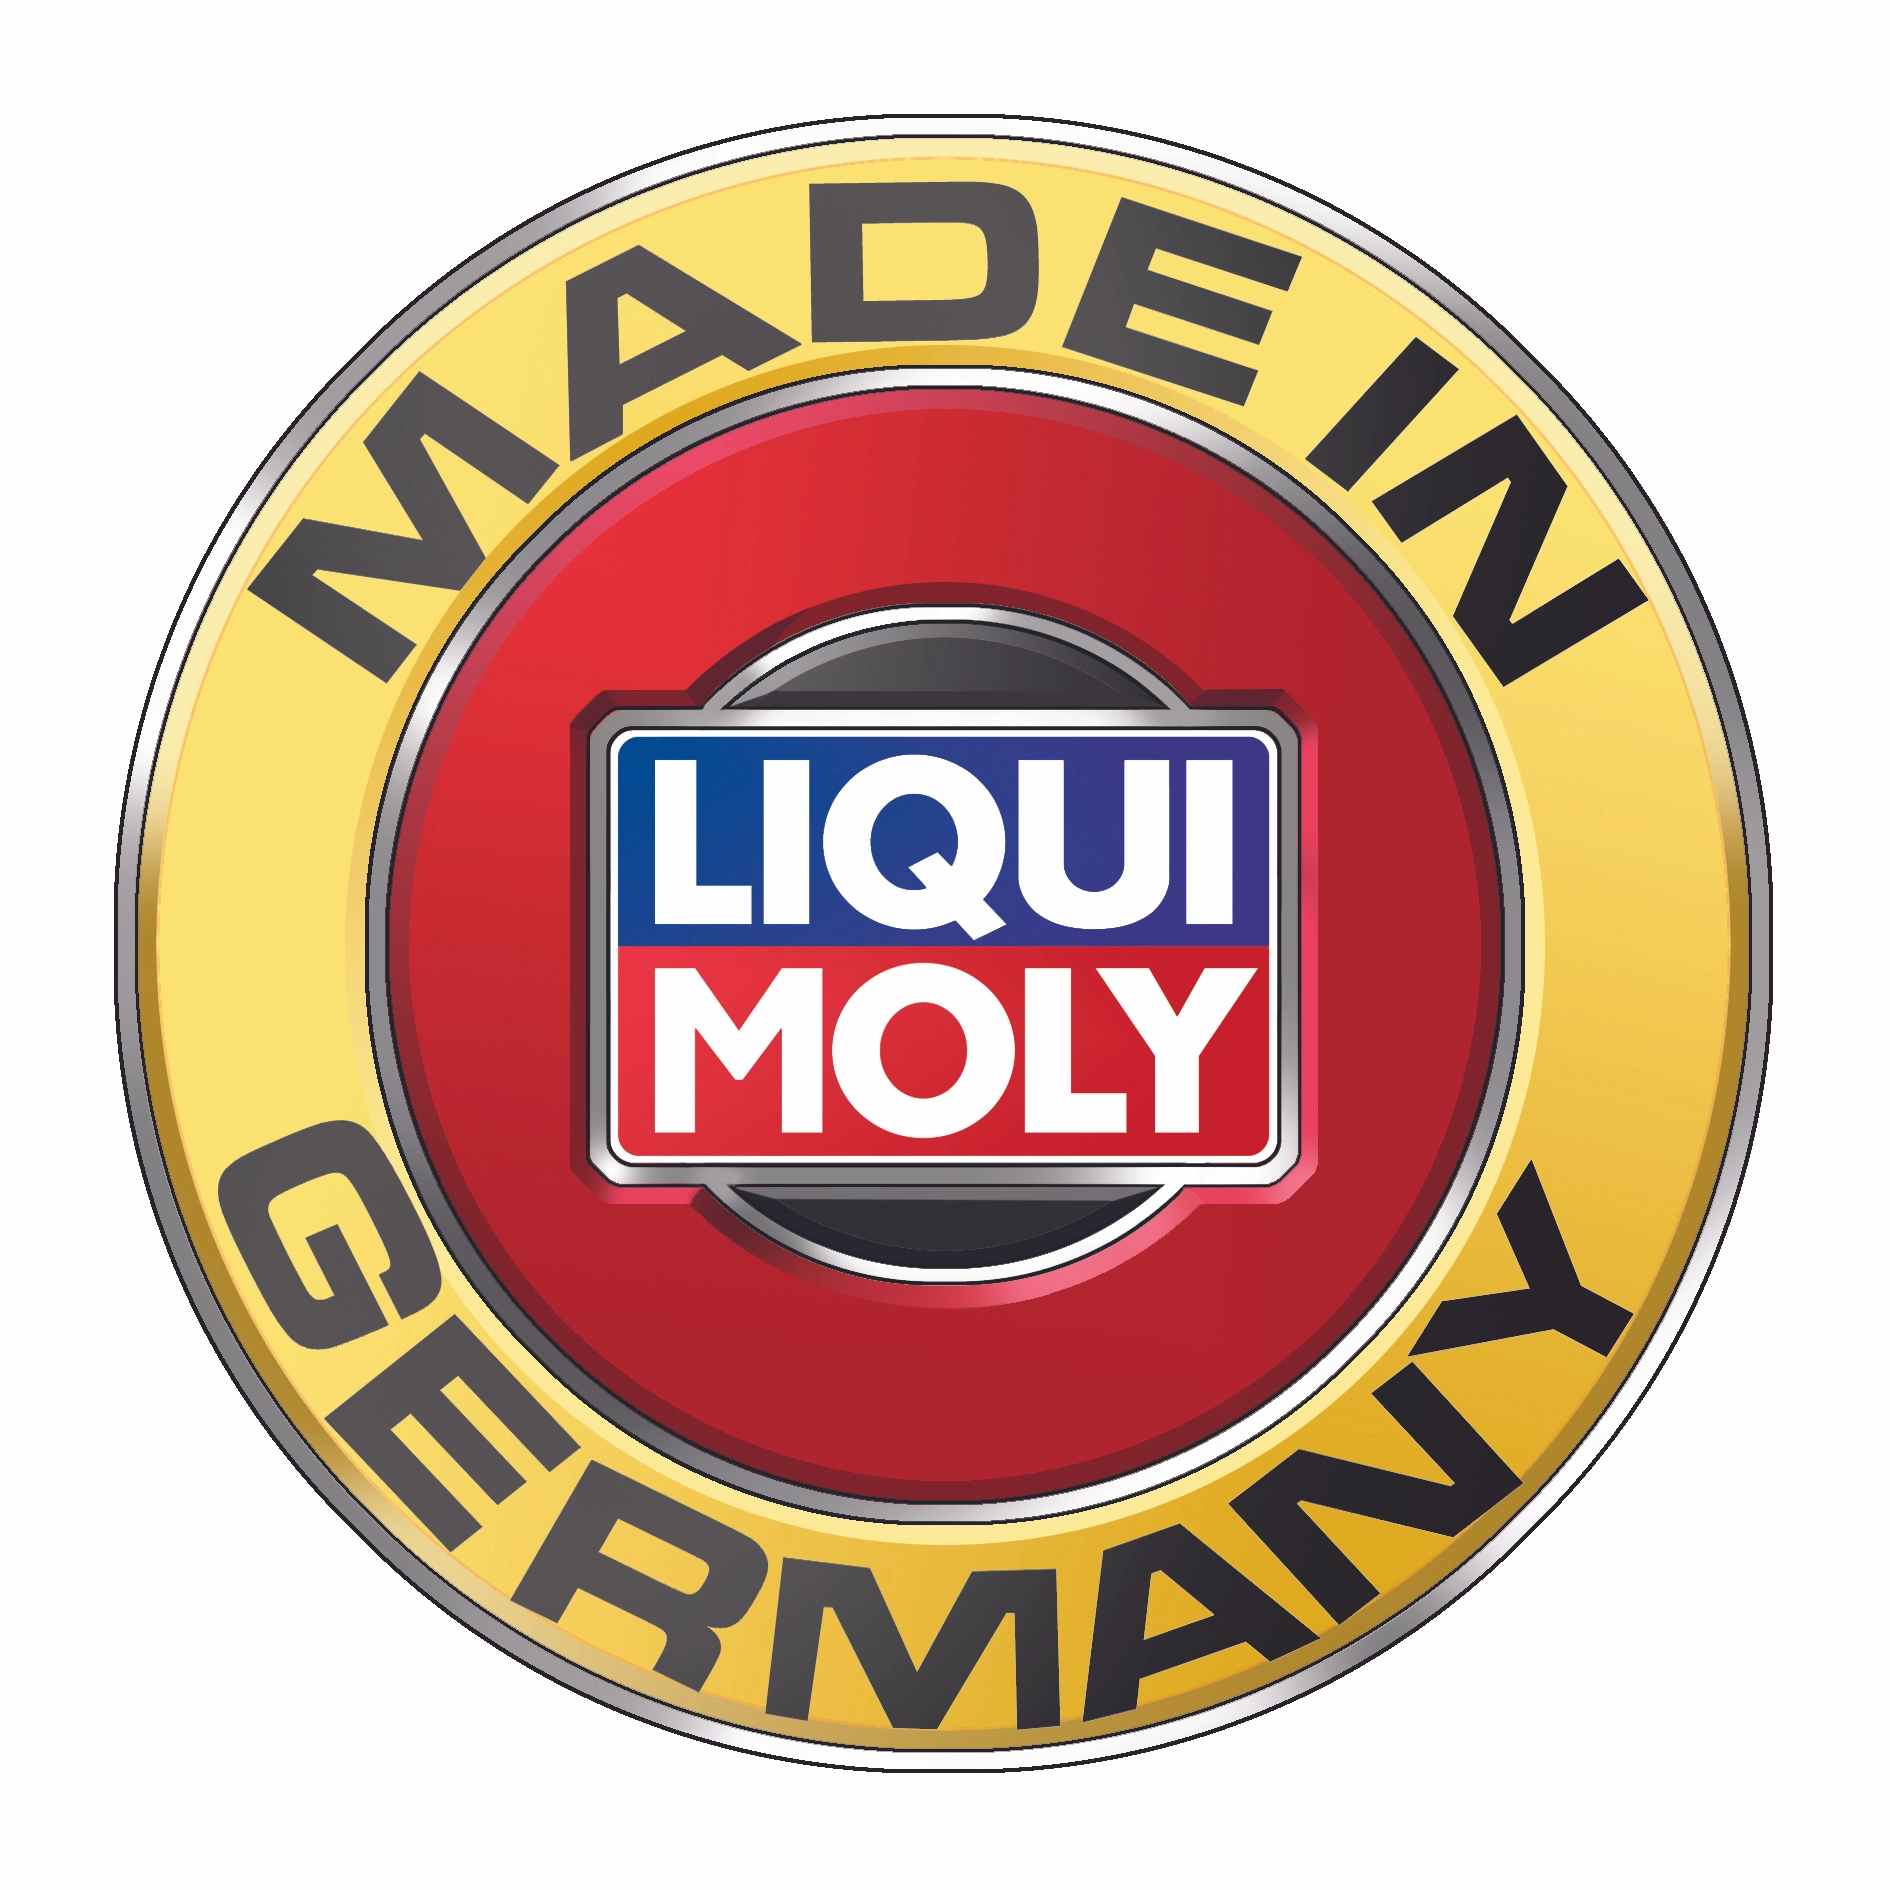 Liqui Moly Bremsen-Anti-Quietsch-Paste 100 g kaufen bei OBI